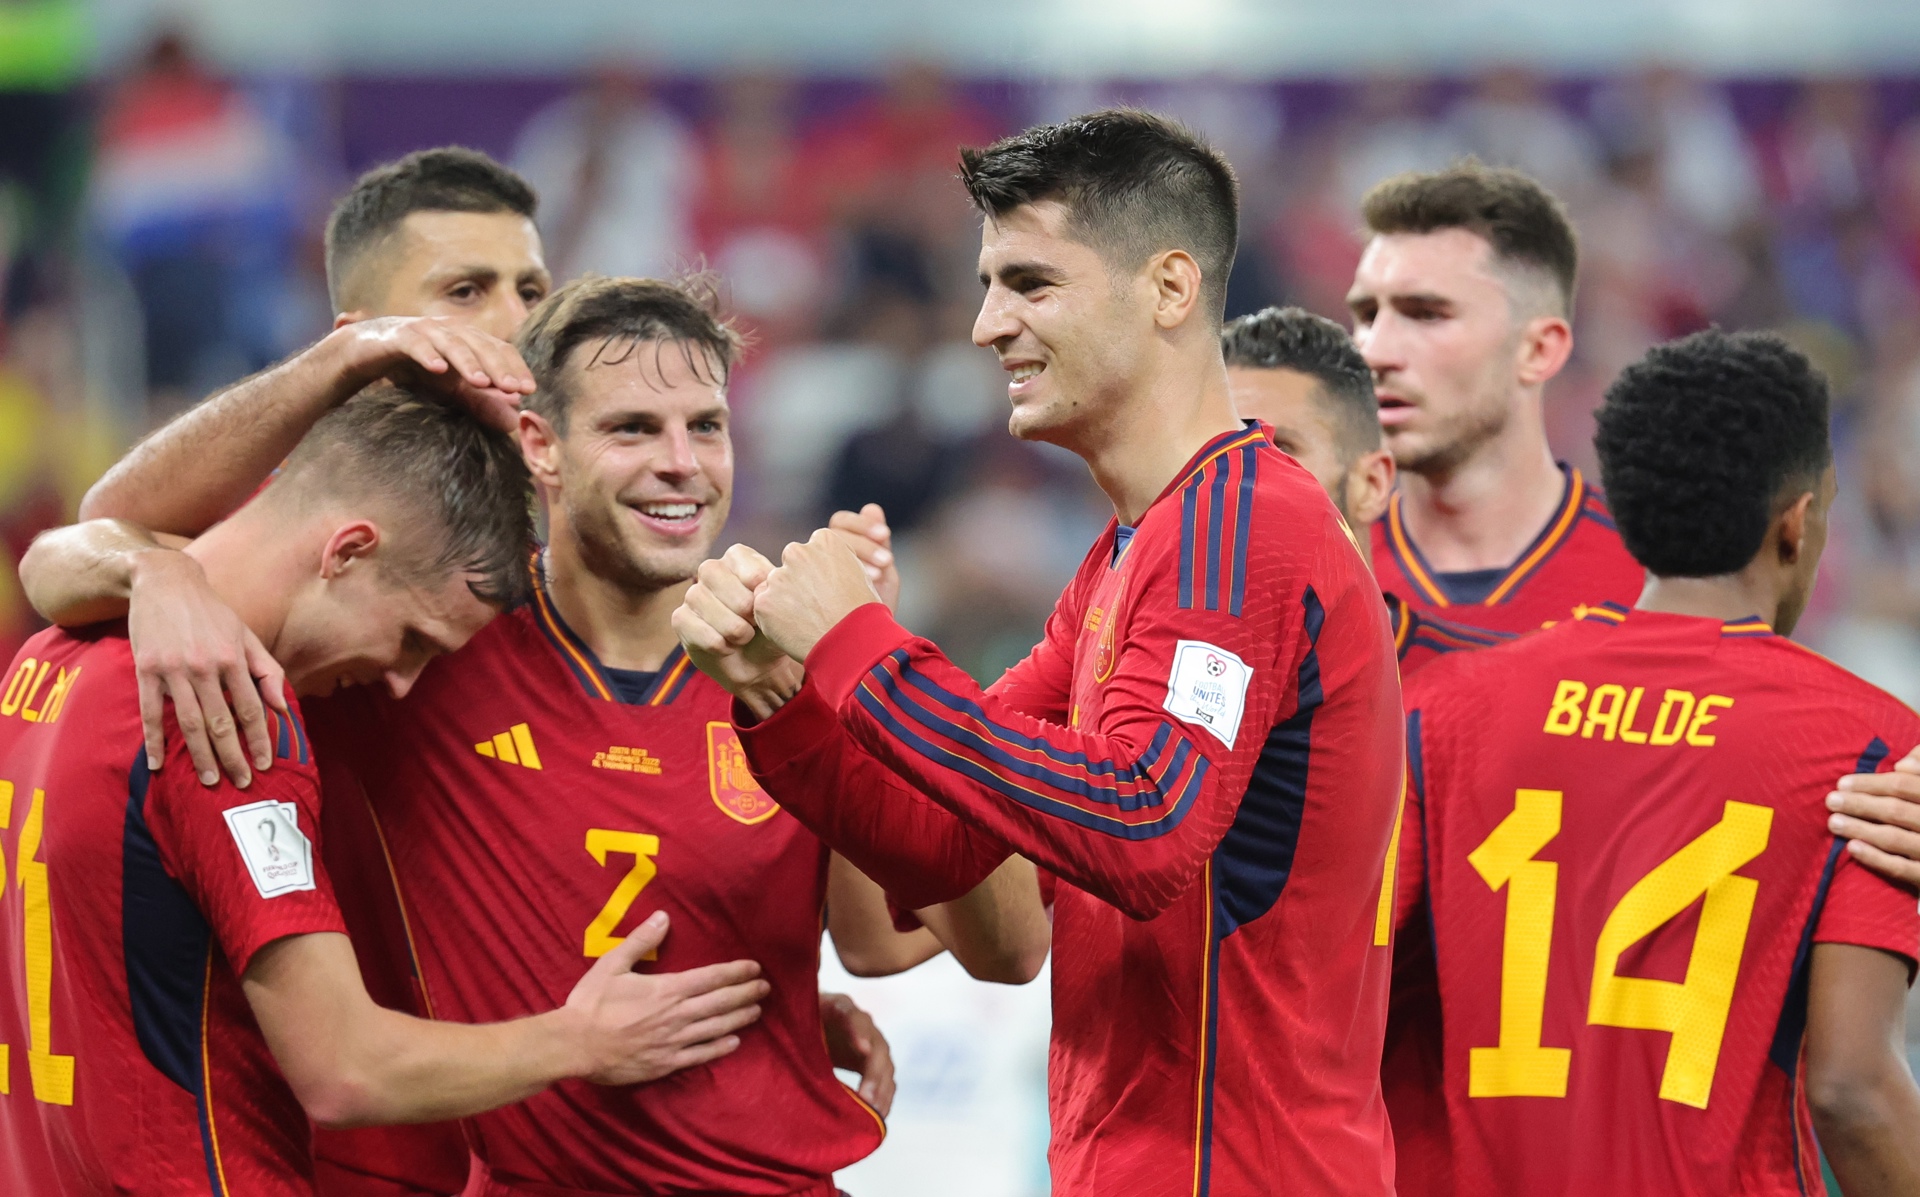 Los Españoles golearon a Costa Rica 7-0